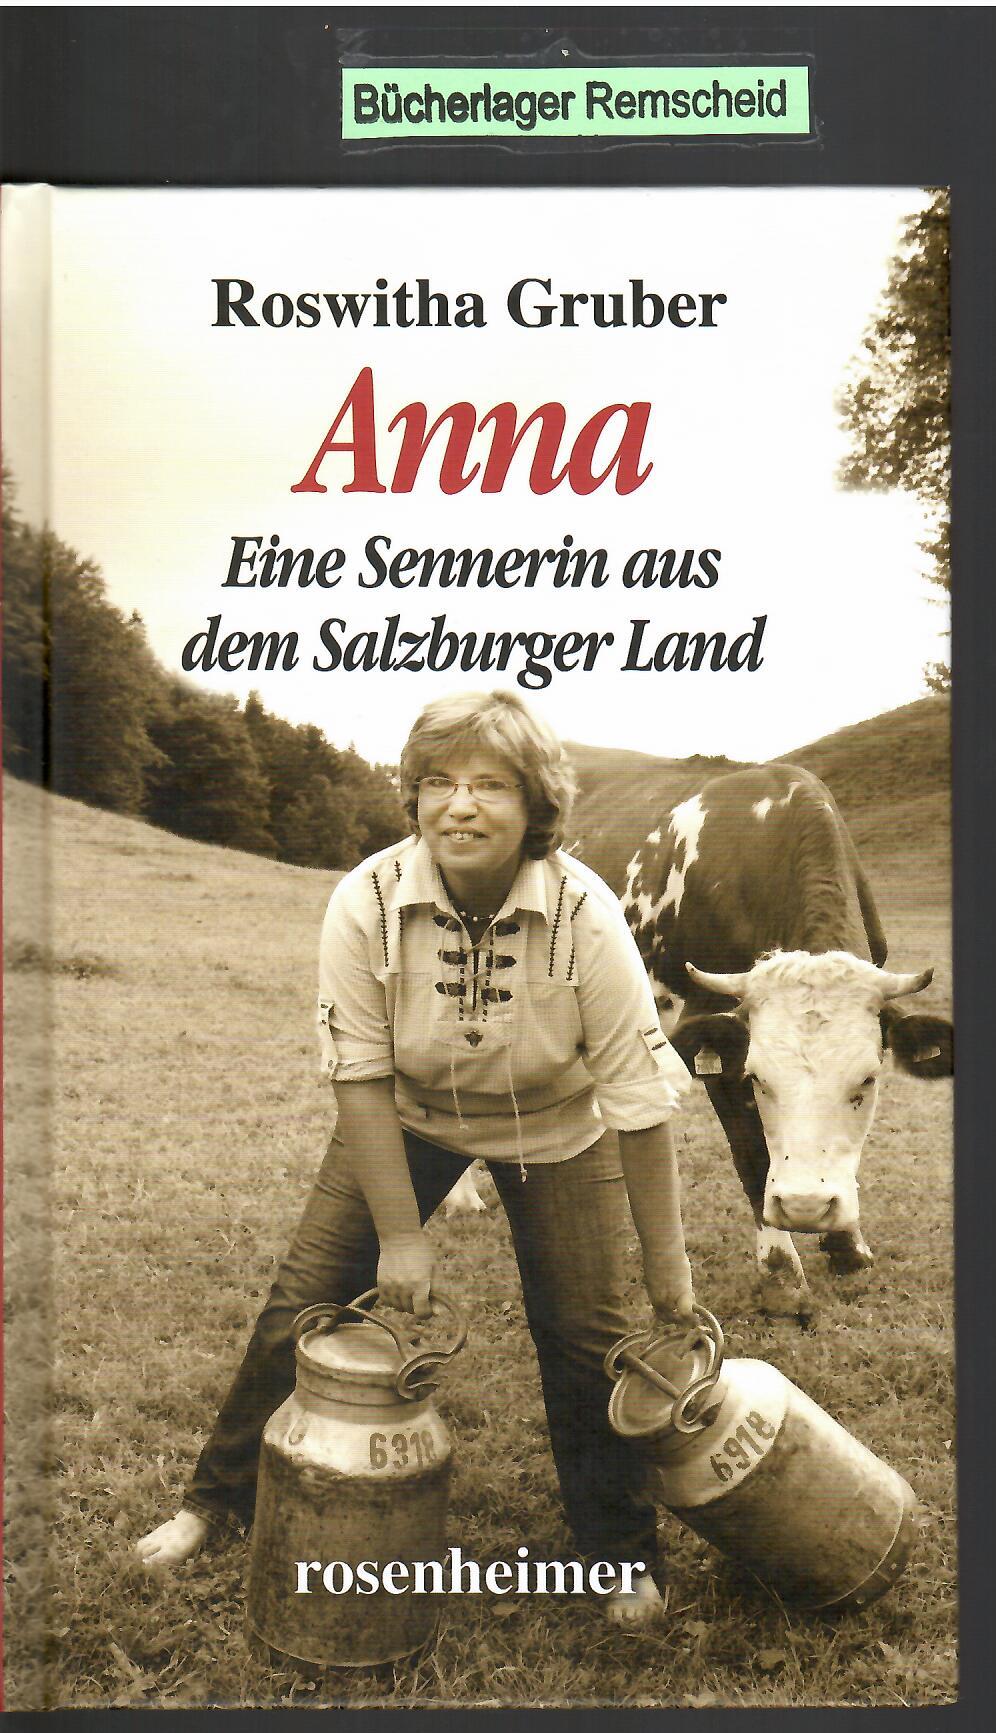 Anna - Eine Sennerin aus dem Salzburger Land  Auflage: 2. - Roswitha, Gruber